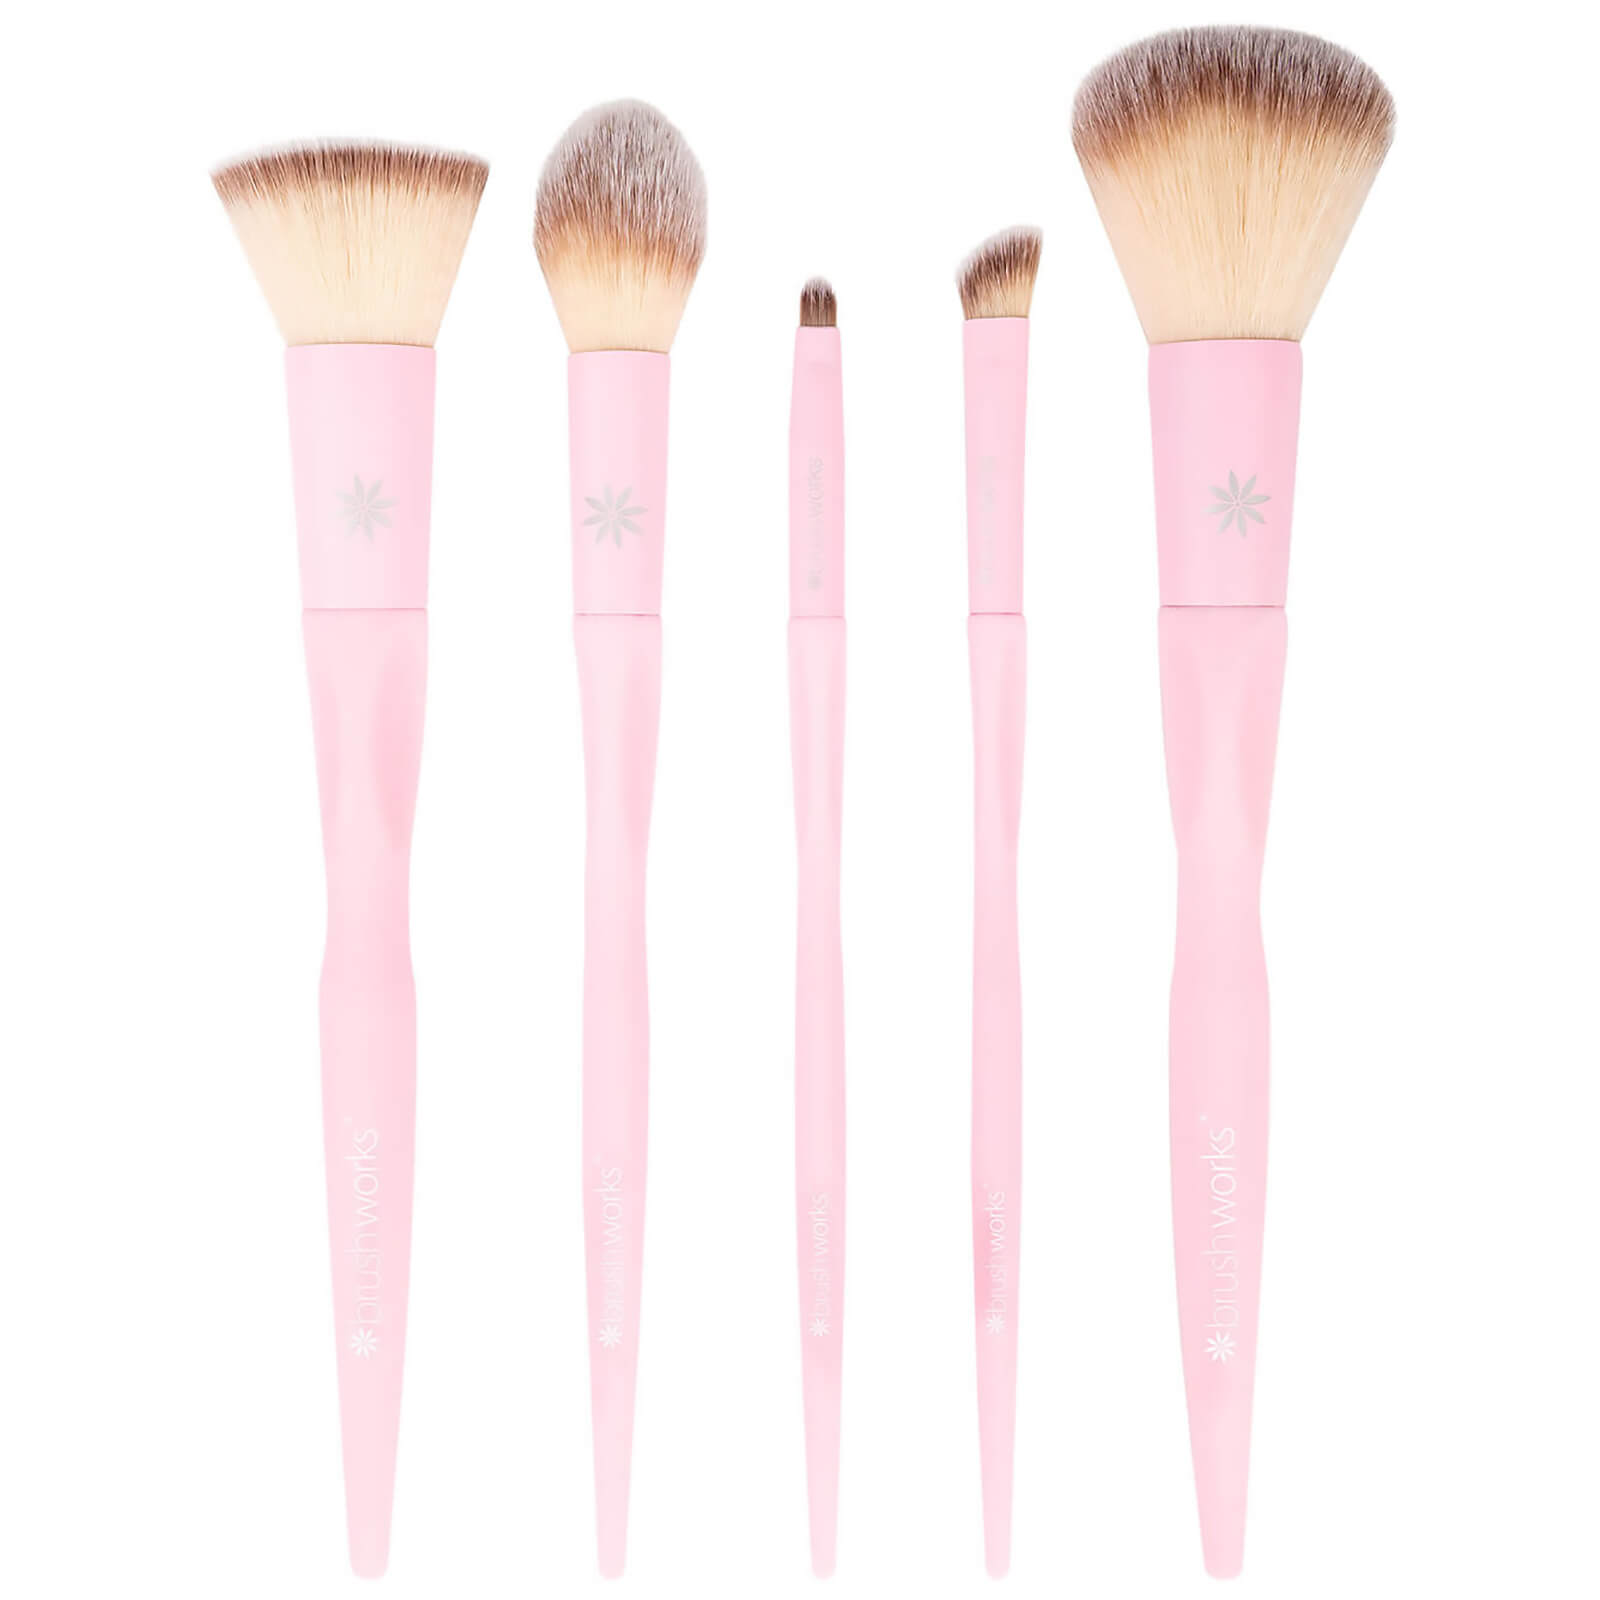 brushworks hd complete face set pink